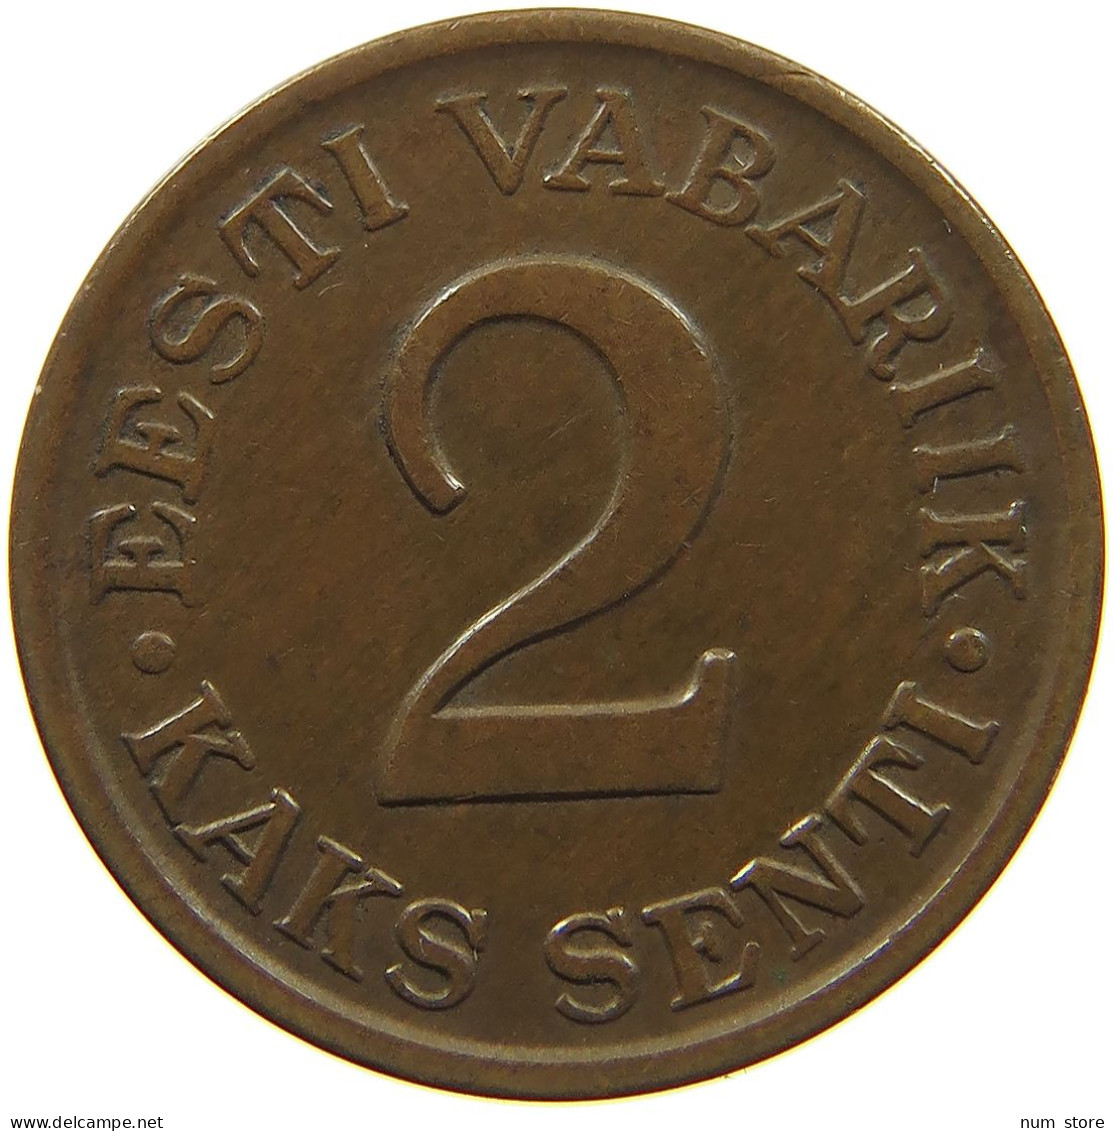 ESTONIA 2 SENTI 1934  #c011 0193 - Estonia